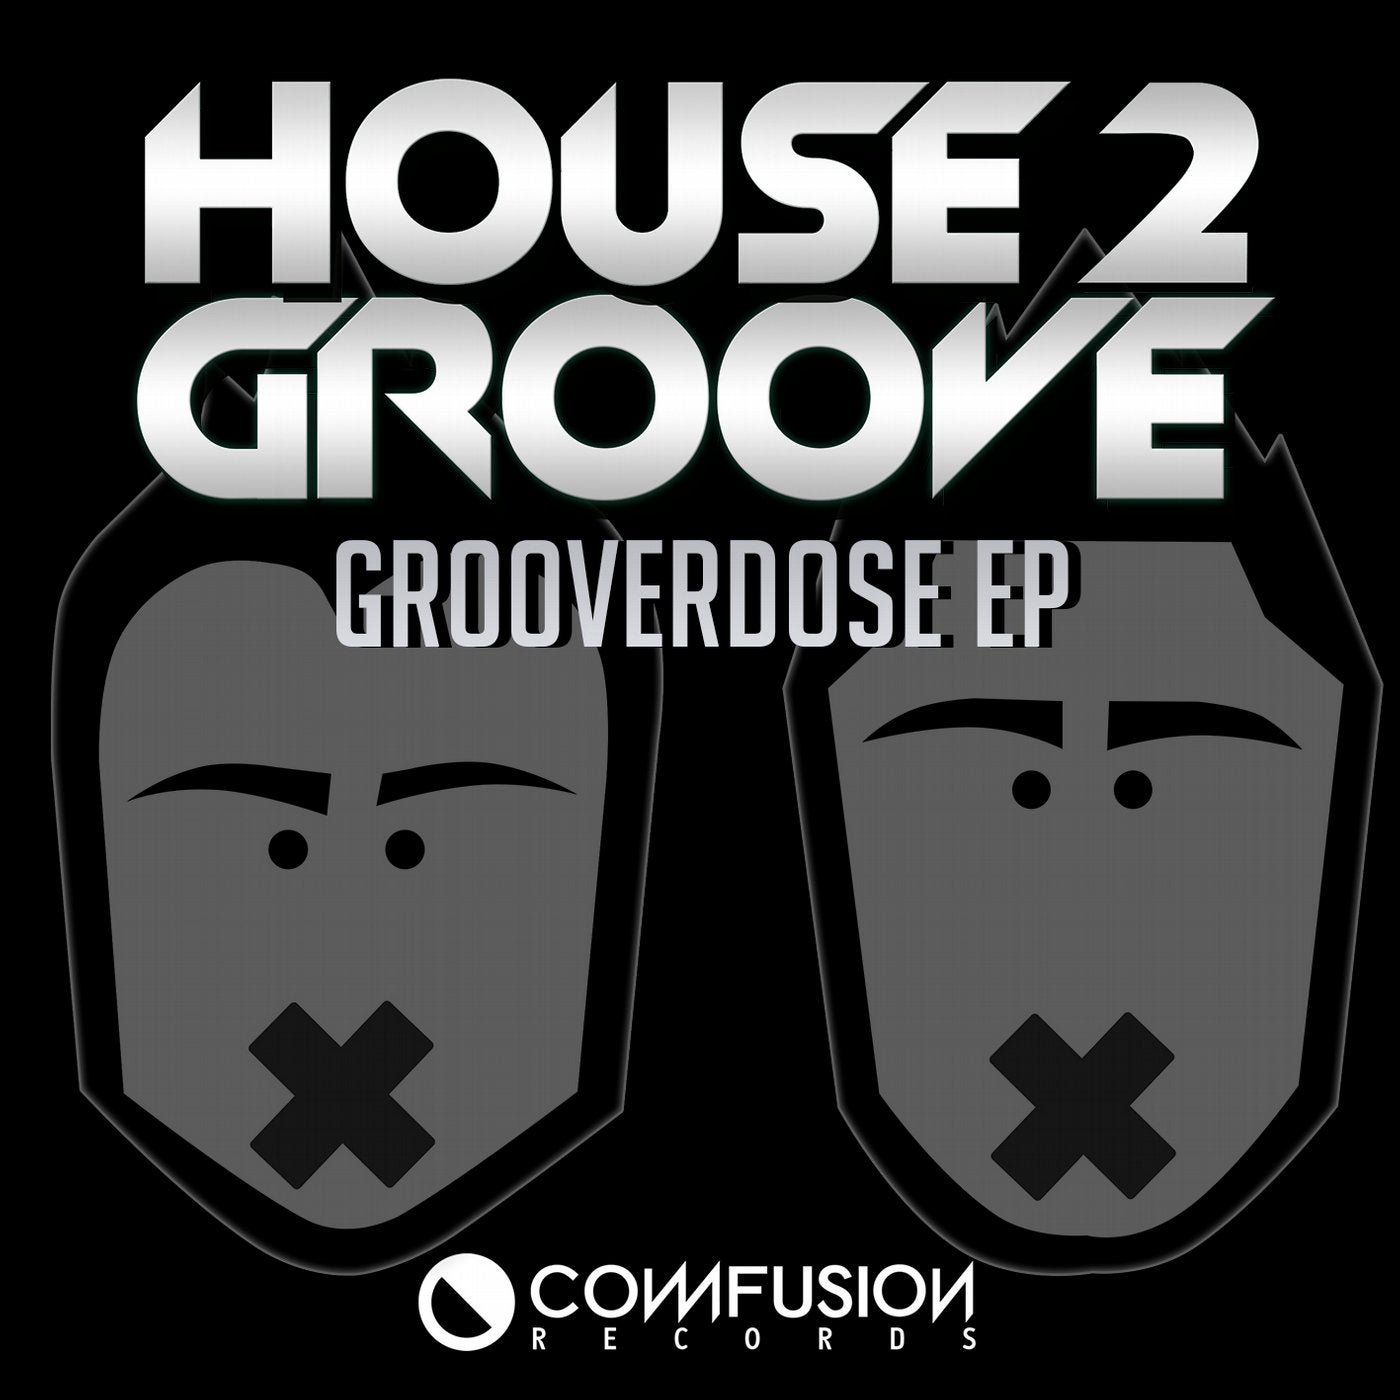 Grooverdose EP